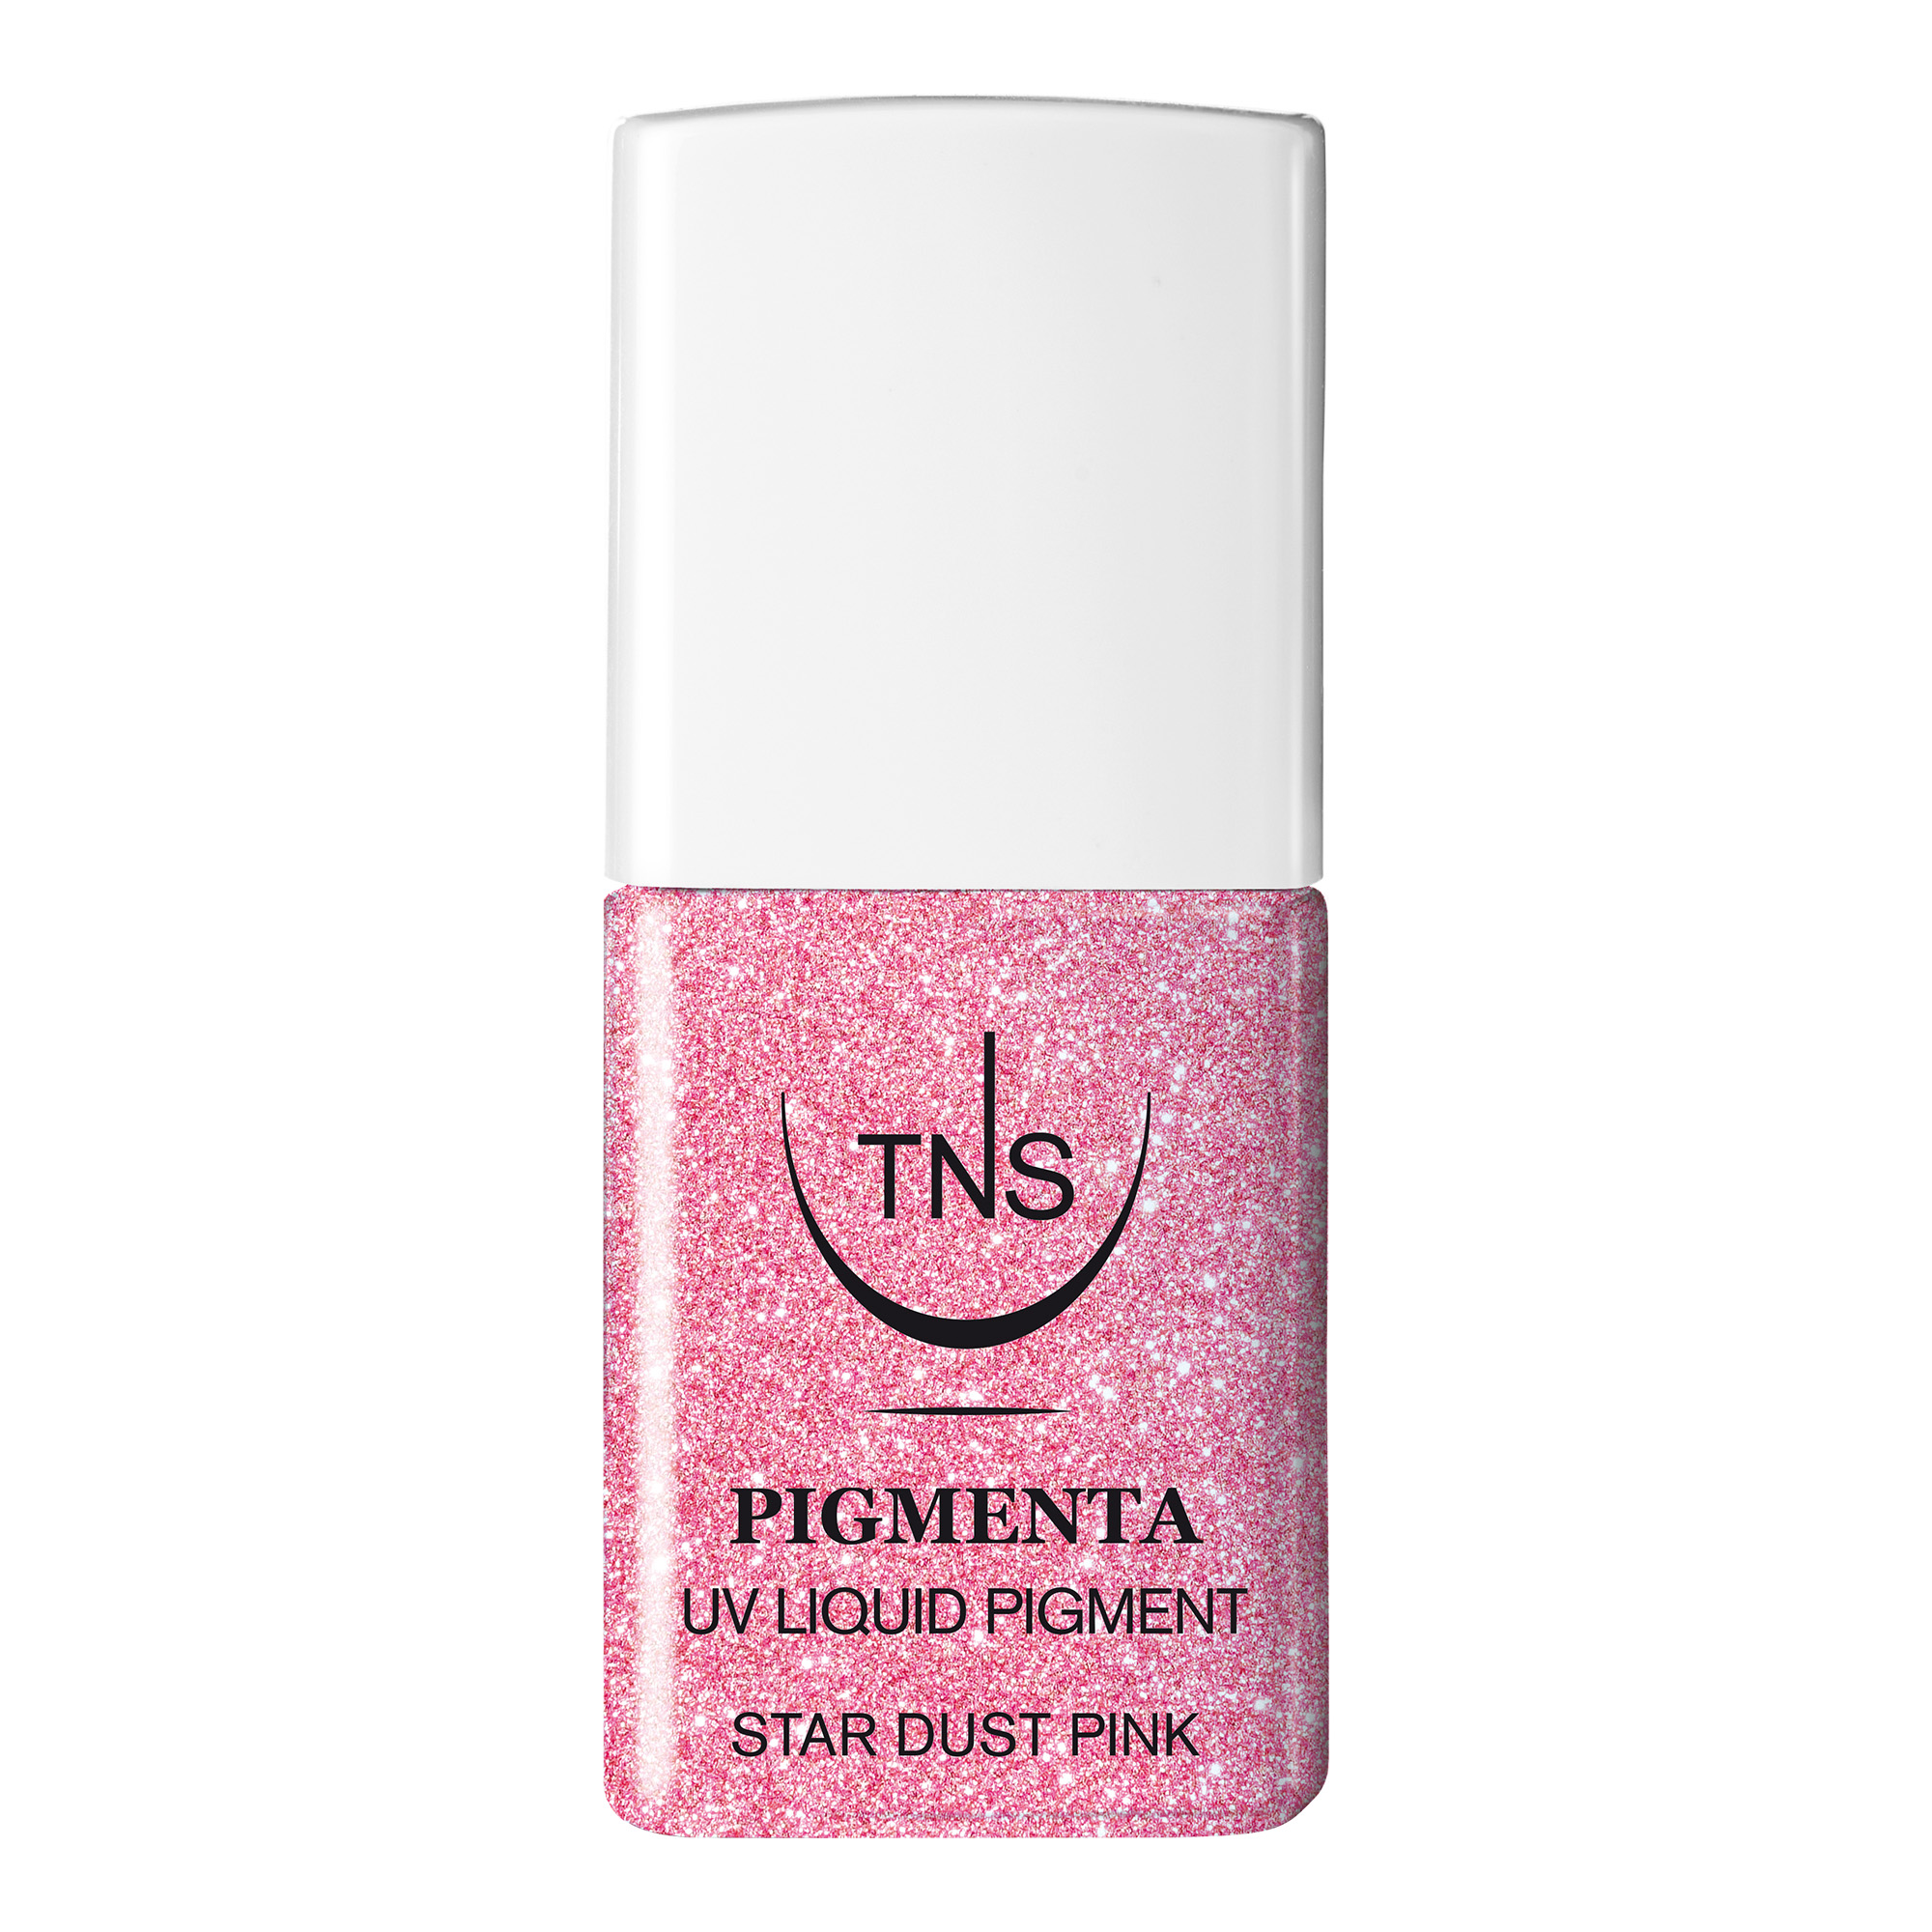 Pigmento Liquido UV Star Dust Pink rosa glitter 10 ml Pigmenta TNS